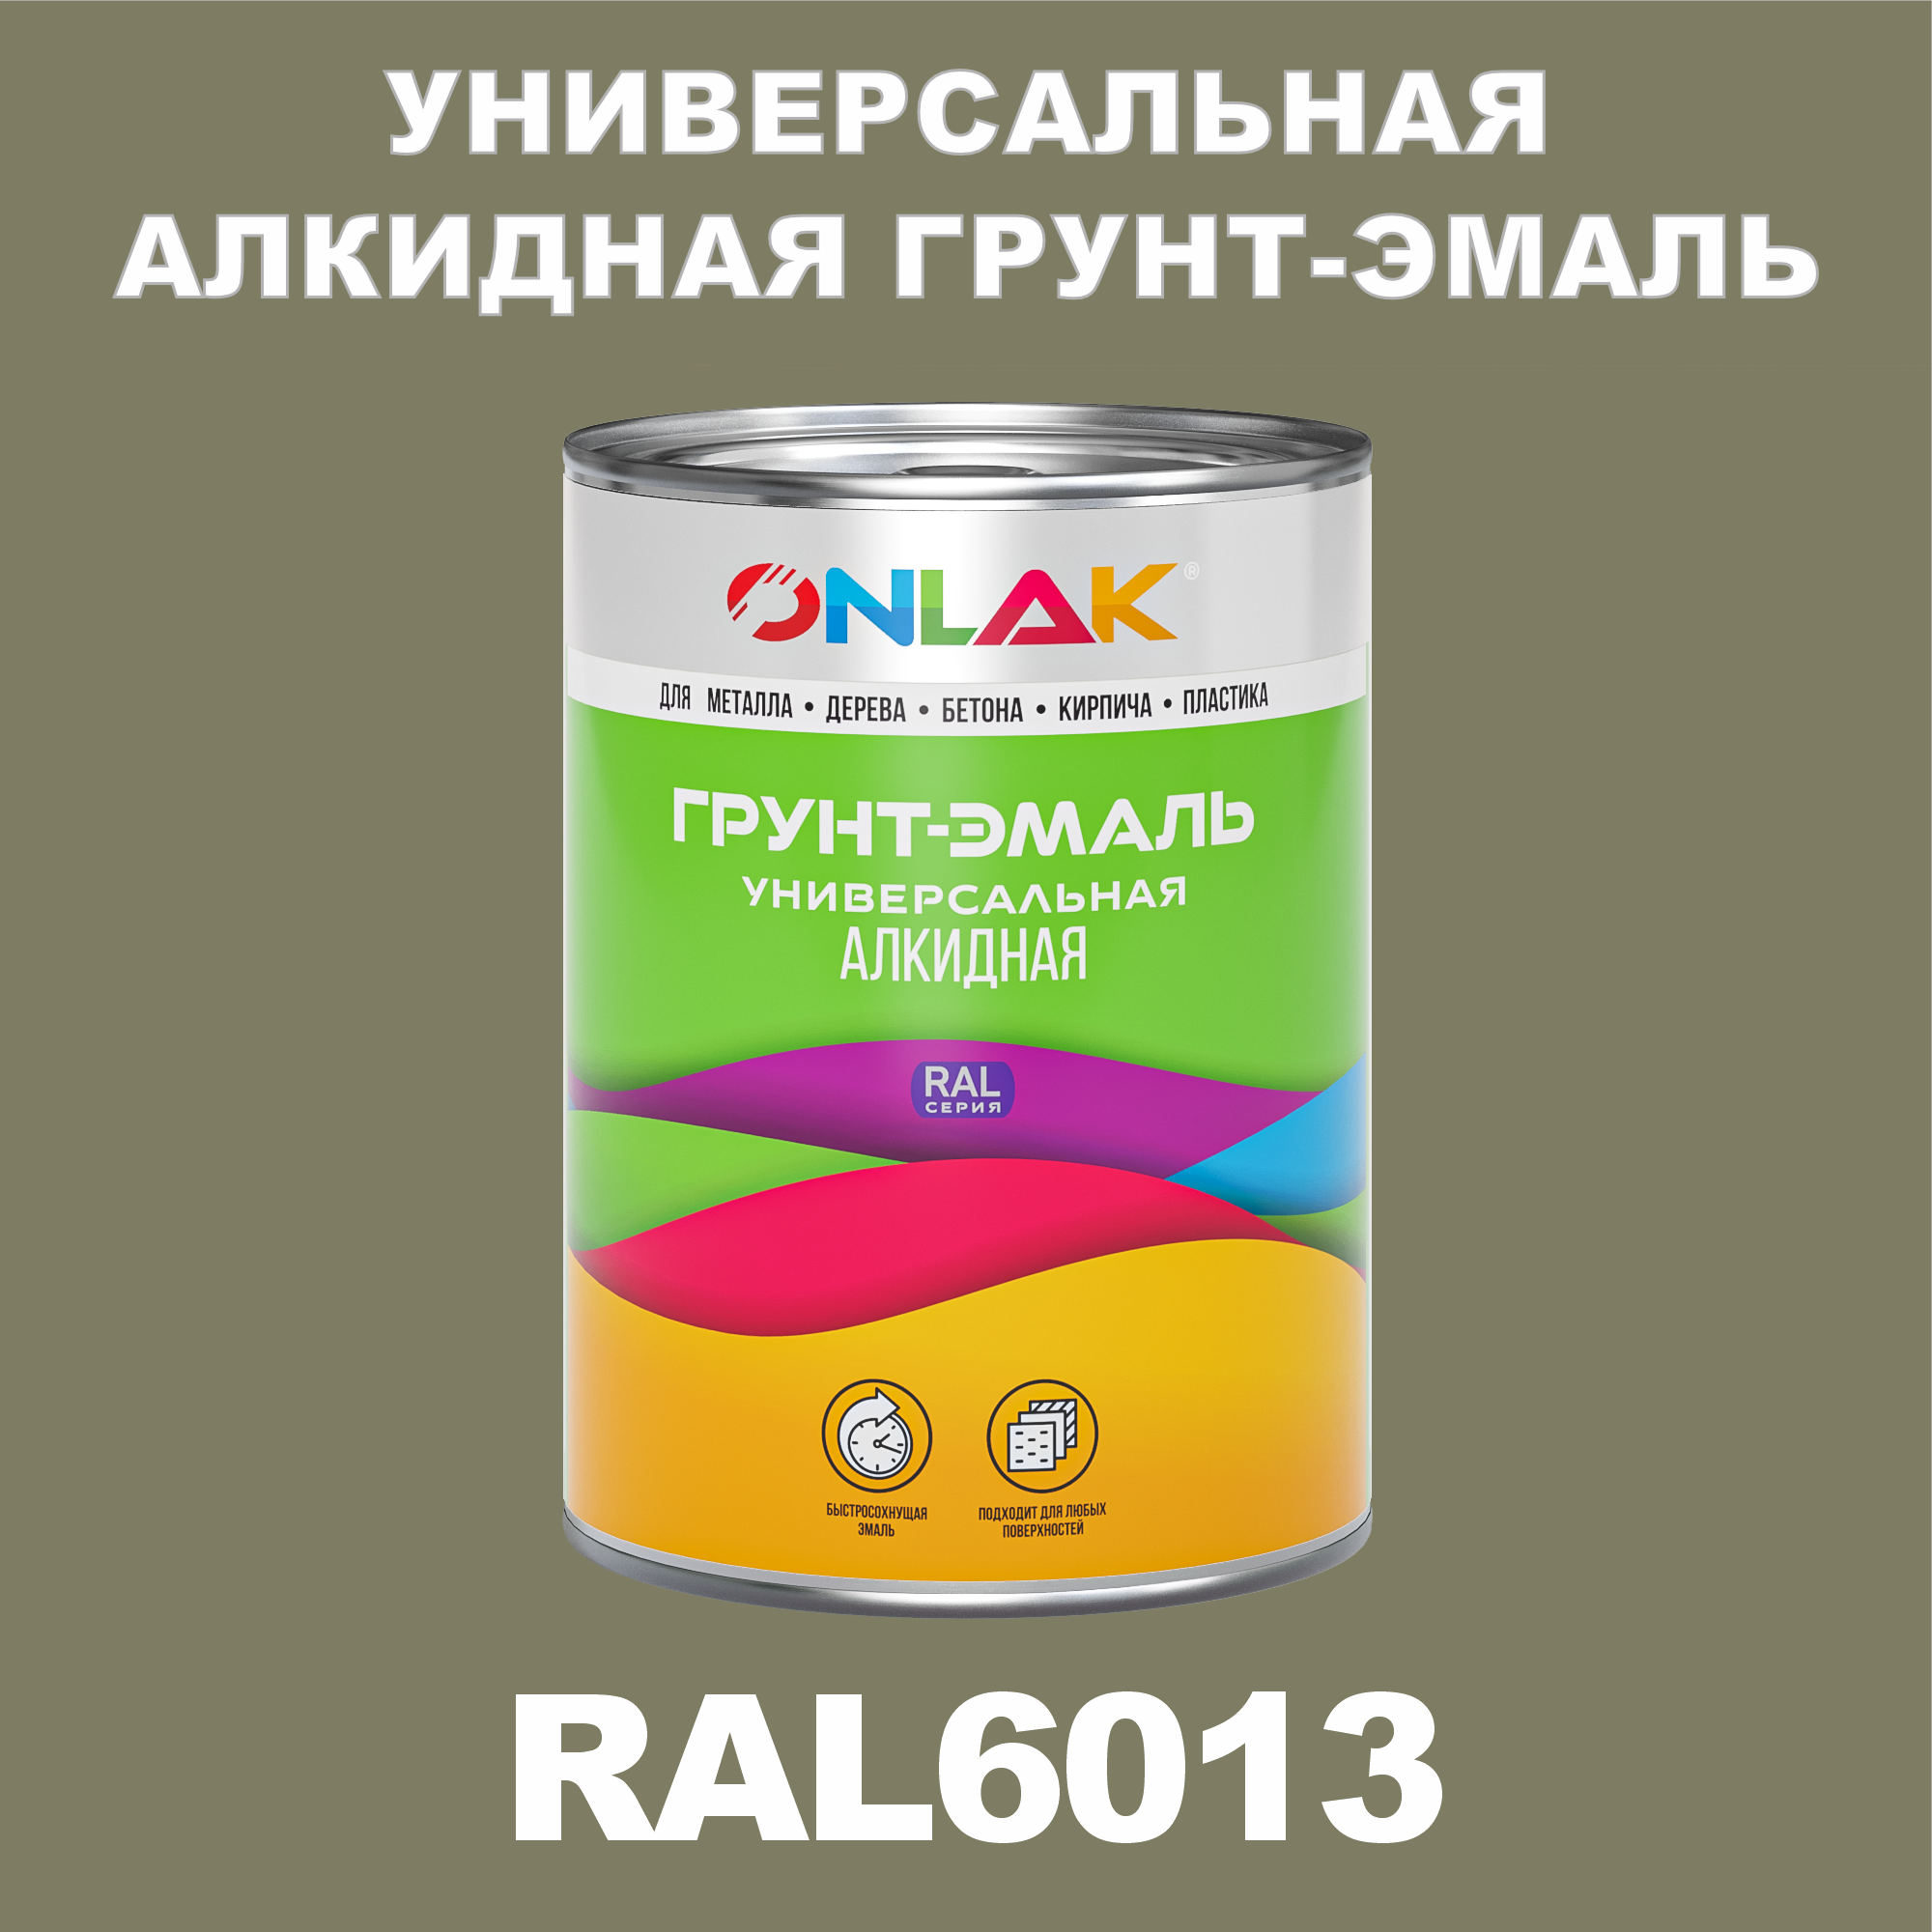 Грунт-эмаль ONLAK 1К RAL6013 антикоррозионная алкидная по металлу по ржавчине 1 кг грунт эмаль престиж по ржавчине алкидная зеленая 1 9 кг